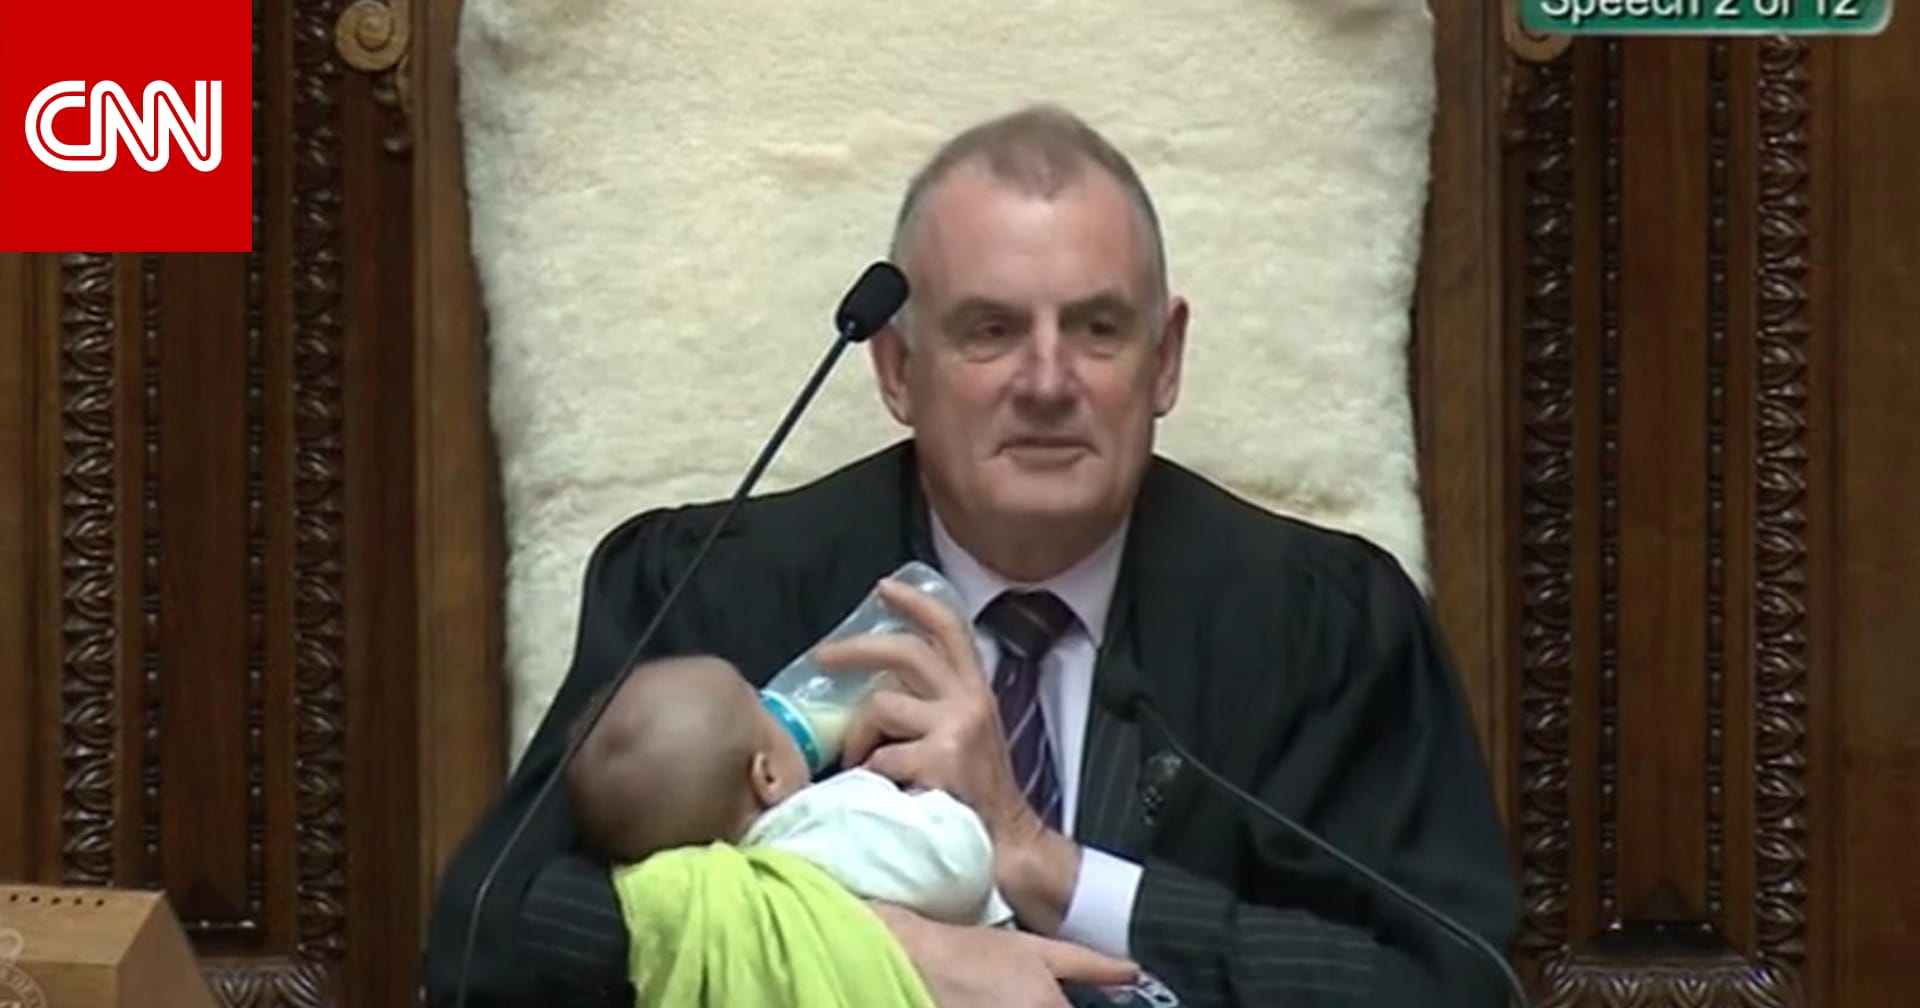 طفل يرضع في أحضان رئيس البرلمان النيوزيلندي